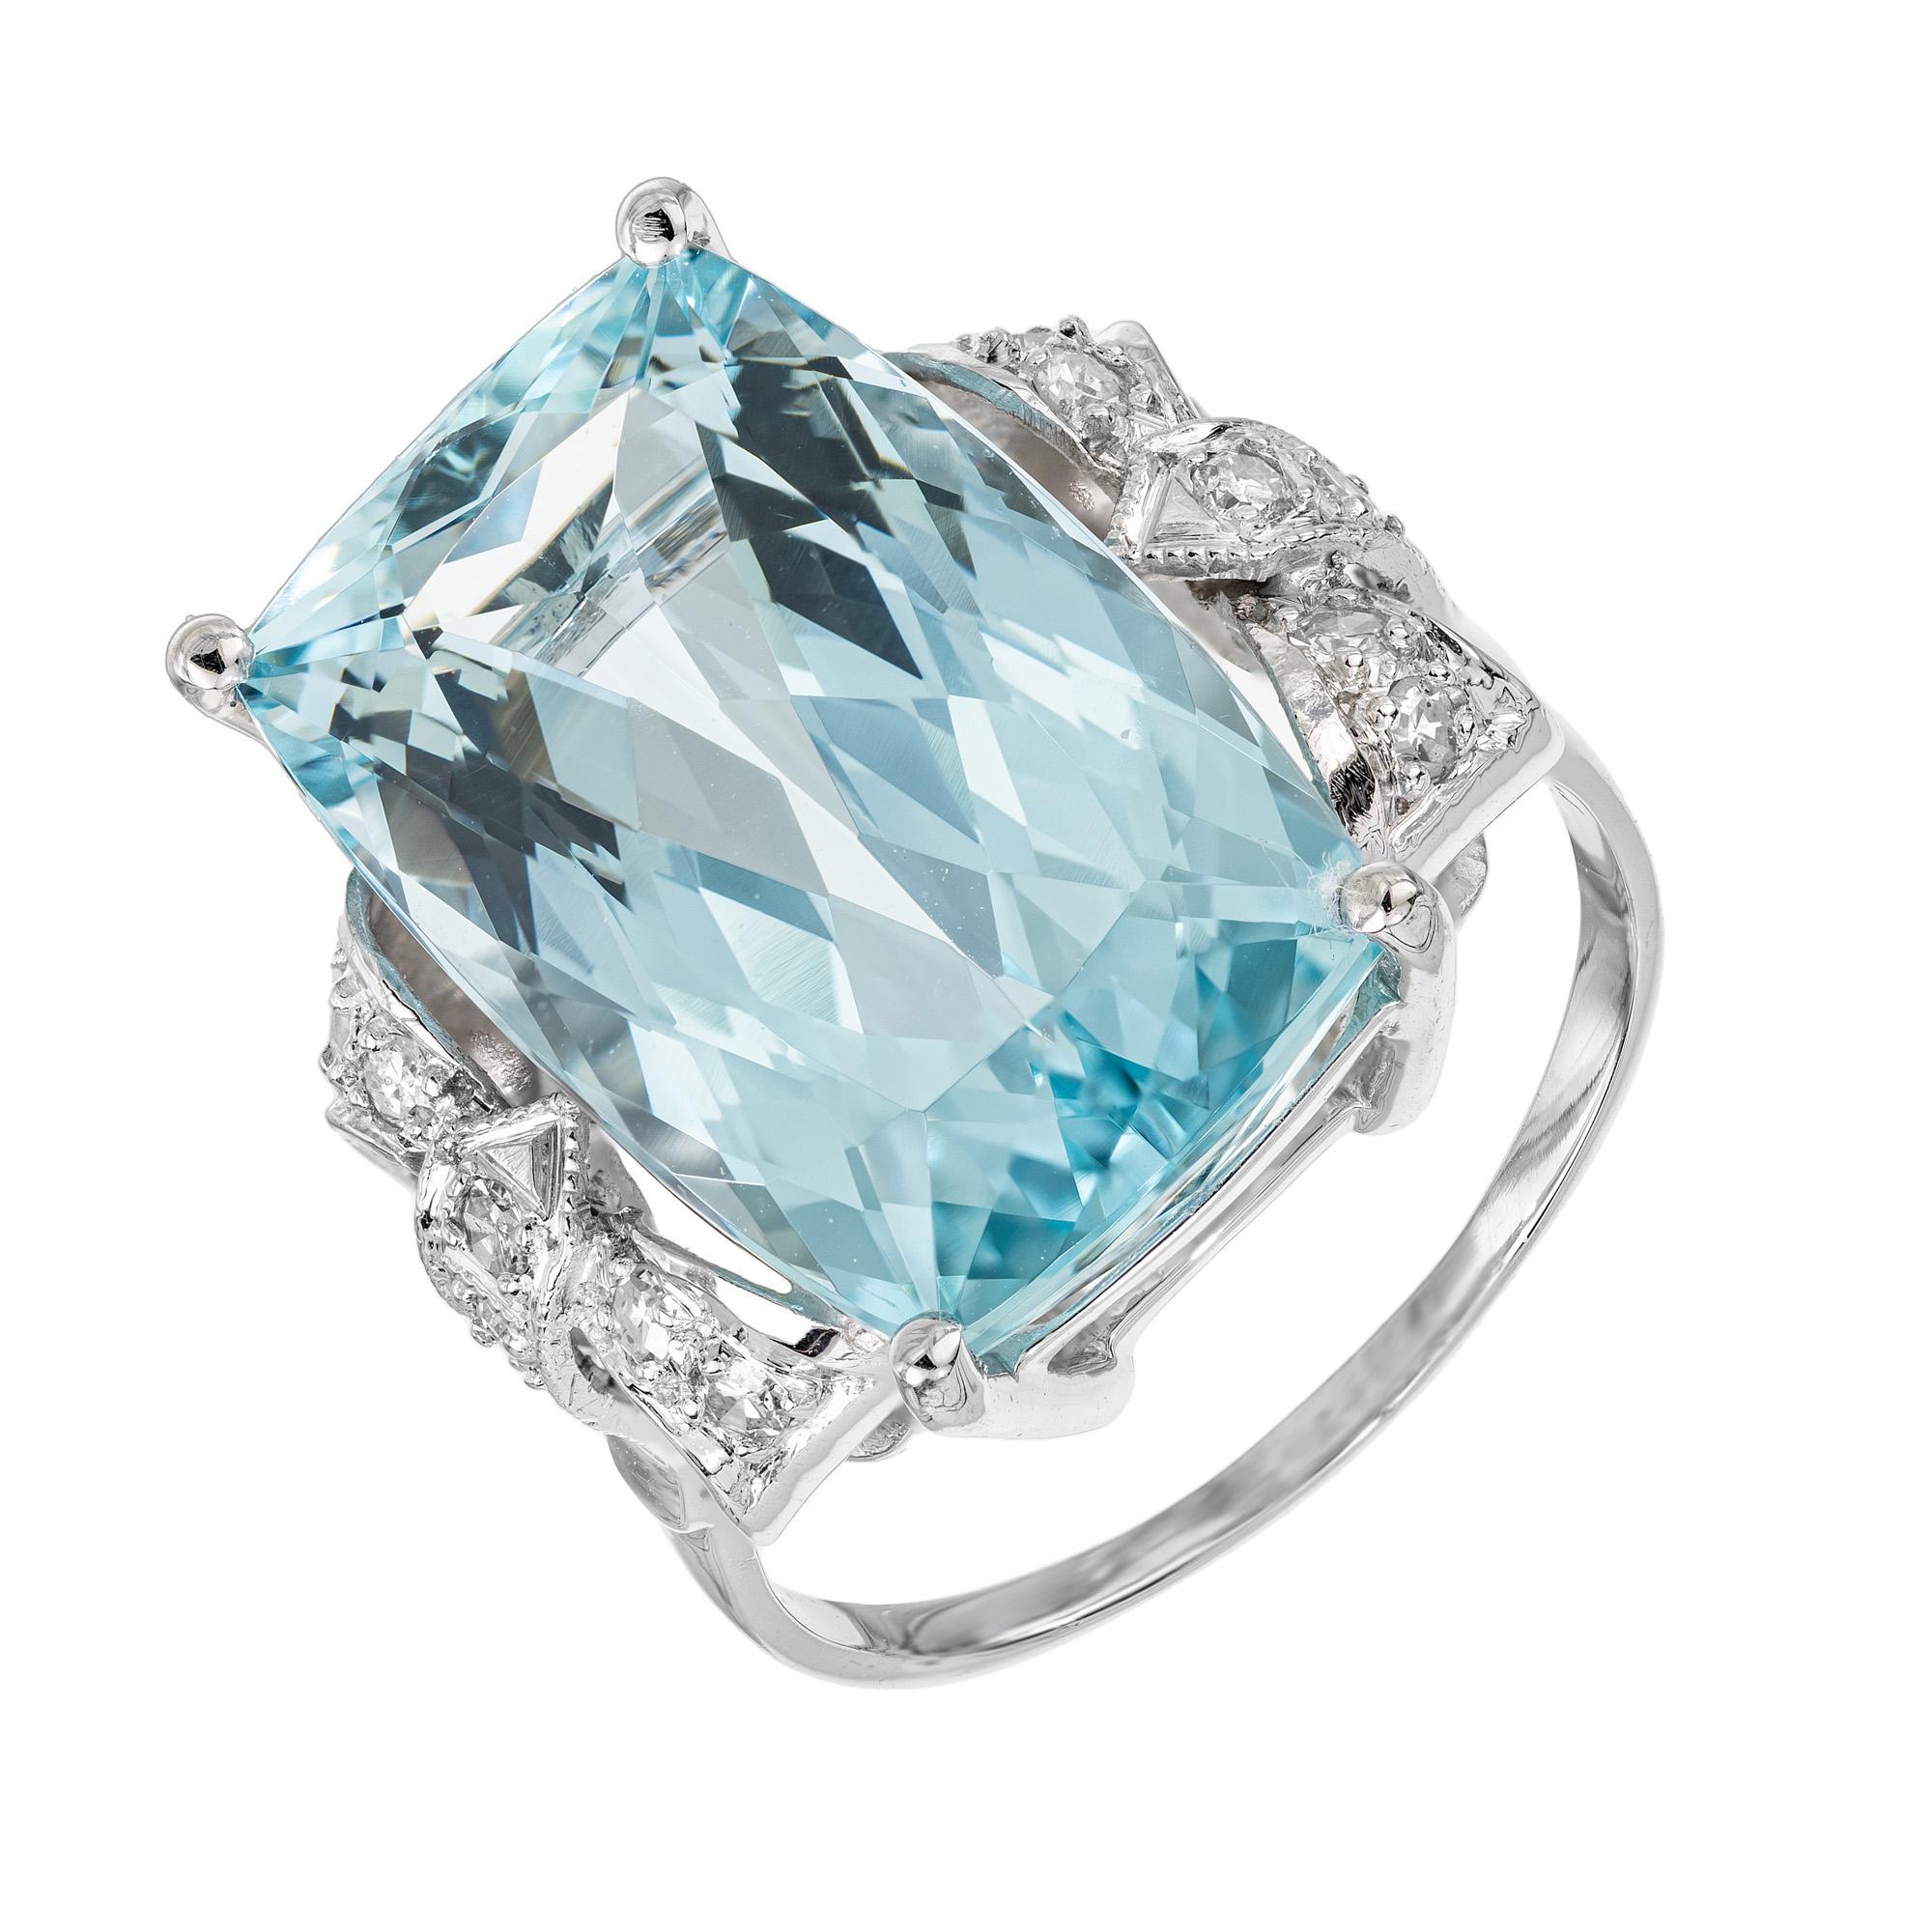 Dieser exquisite Ring aus den 1940er Jahren besticht durch einen 10,35 Karat schweren Aquamarin im Kissenschliff. Montiert in einer Platinfassung im Bogenstil, die mit 18 Diamanten im Einzelschliff verziert ist. Das Aqua ist ein sattes, helles